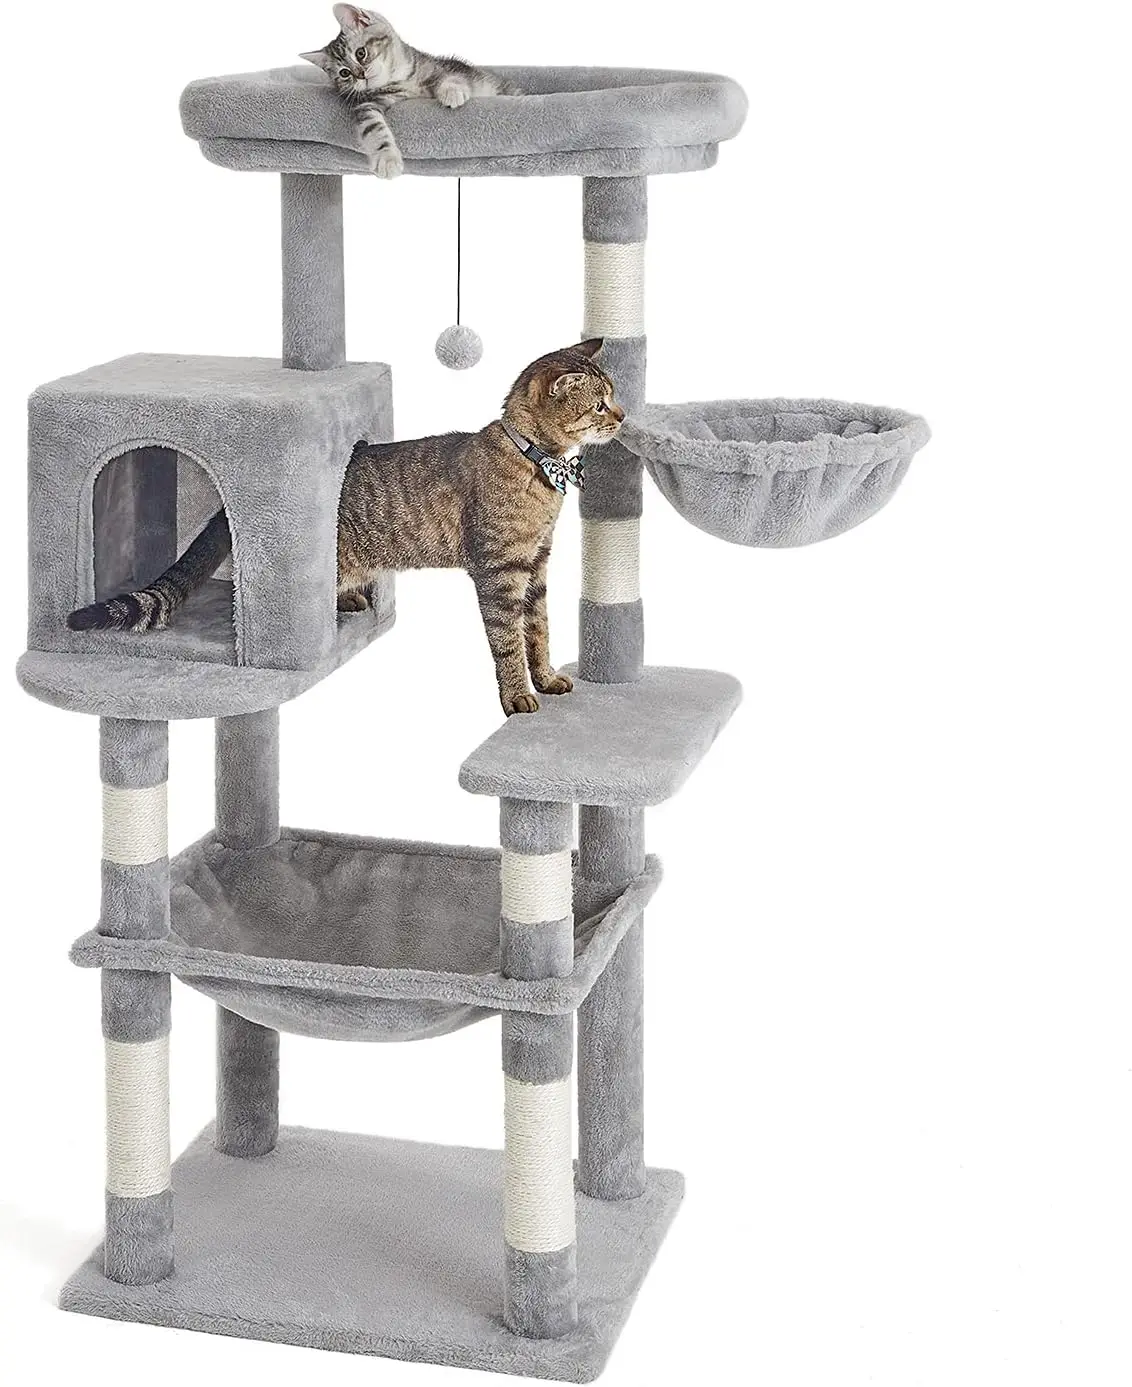 

Многоуровневая башня для кошек, башня для кошек с когтеточкой из сизаля, плюшевые гамаки, игровой домик для котят